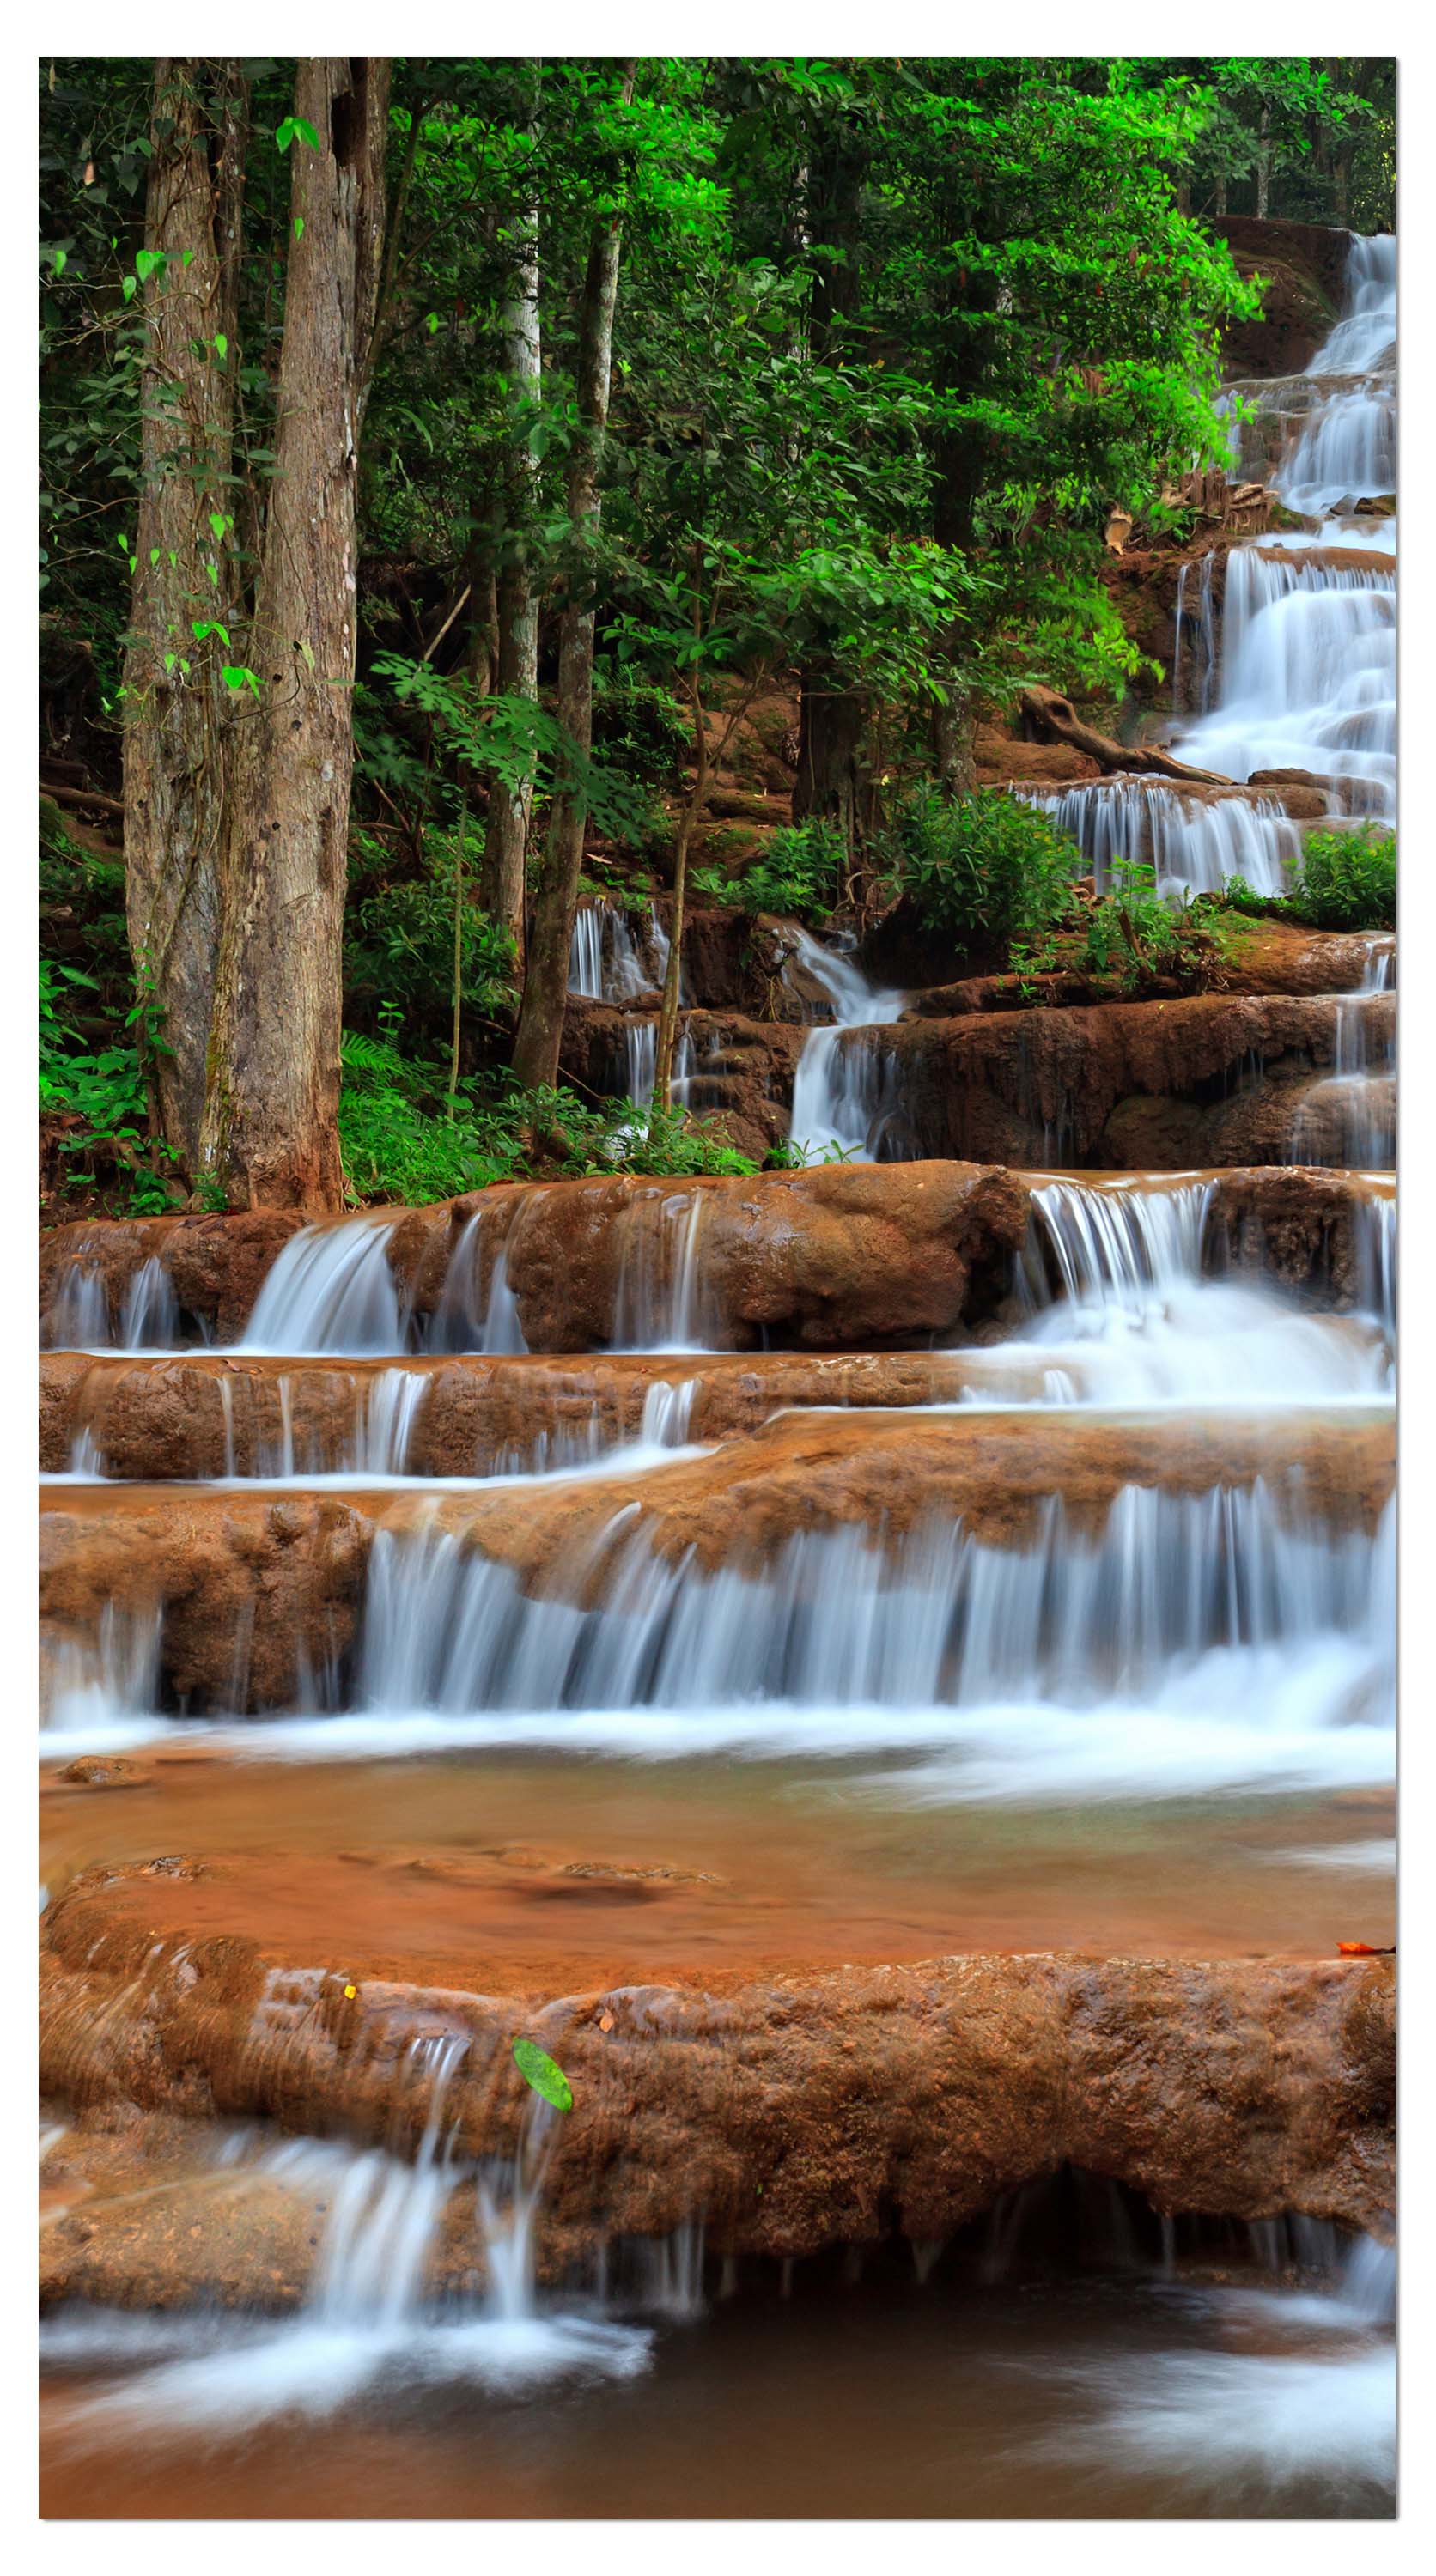 Garderobe Wasserfall im Wald.Thailand M0894 entdecken - Bild 4